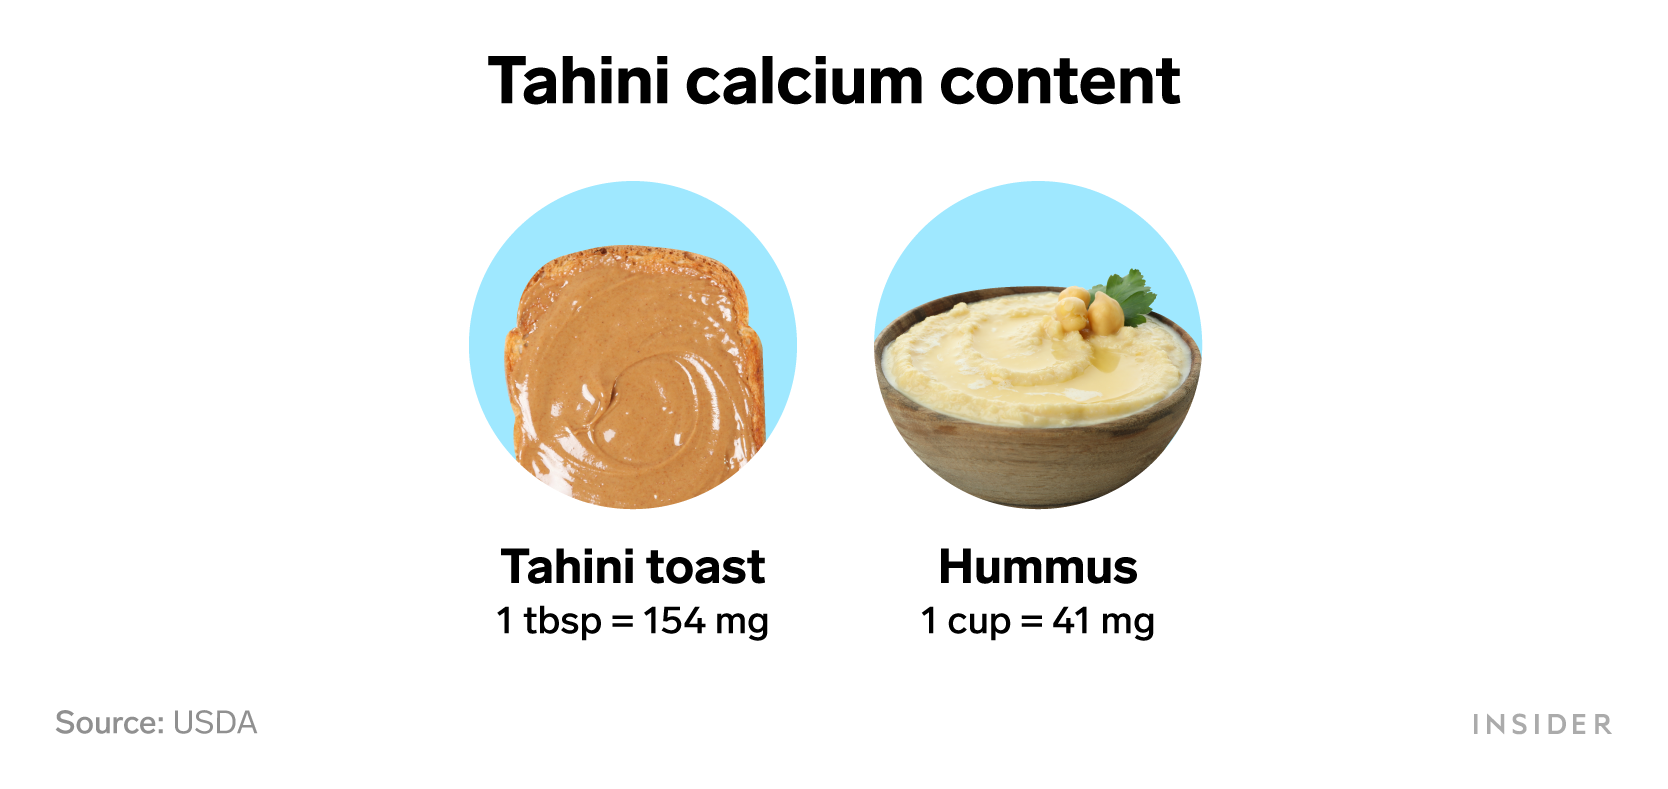 Foods that are rich in calcium: Tahini calcium content